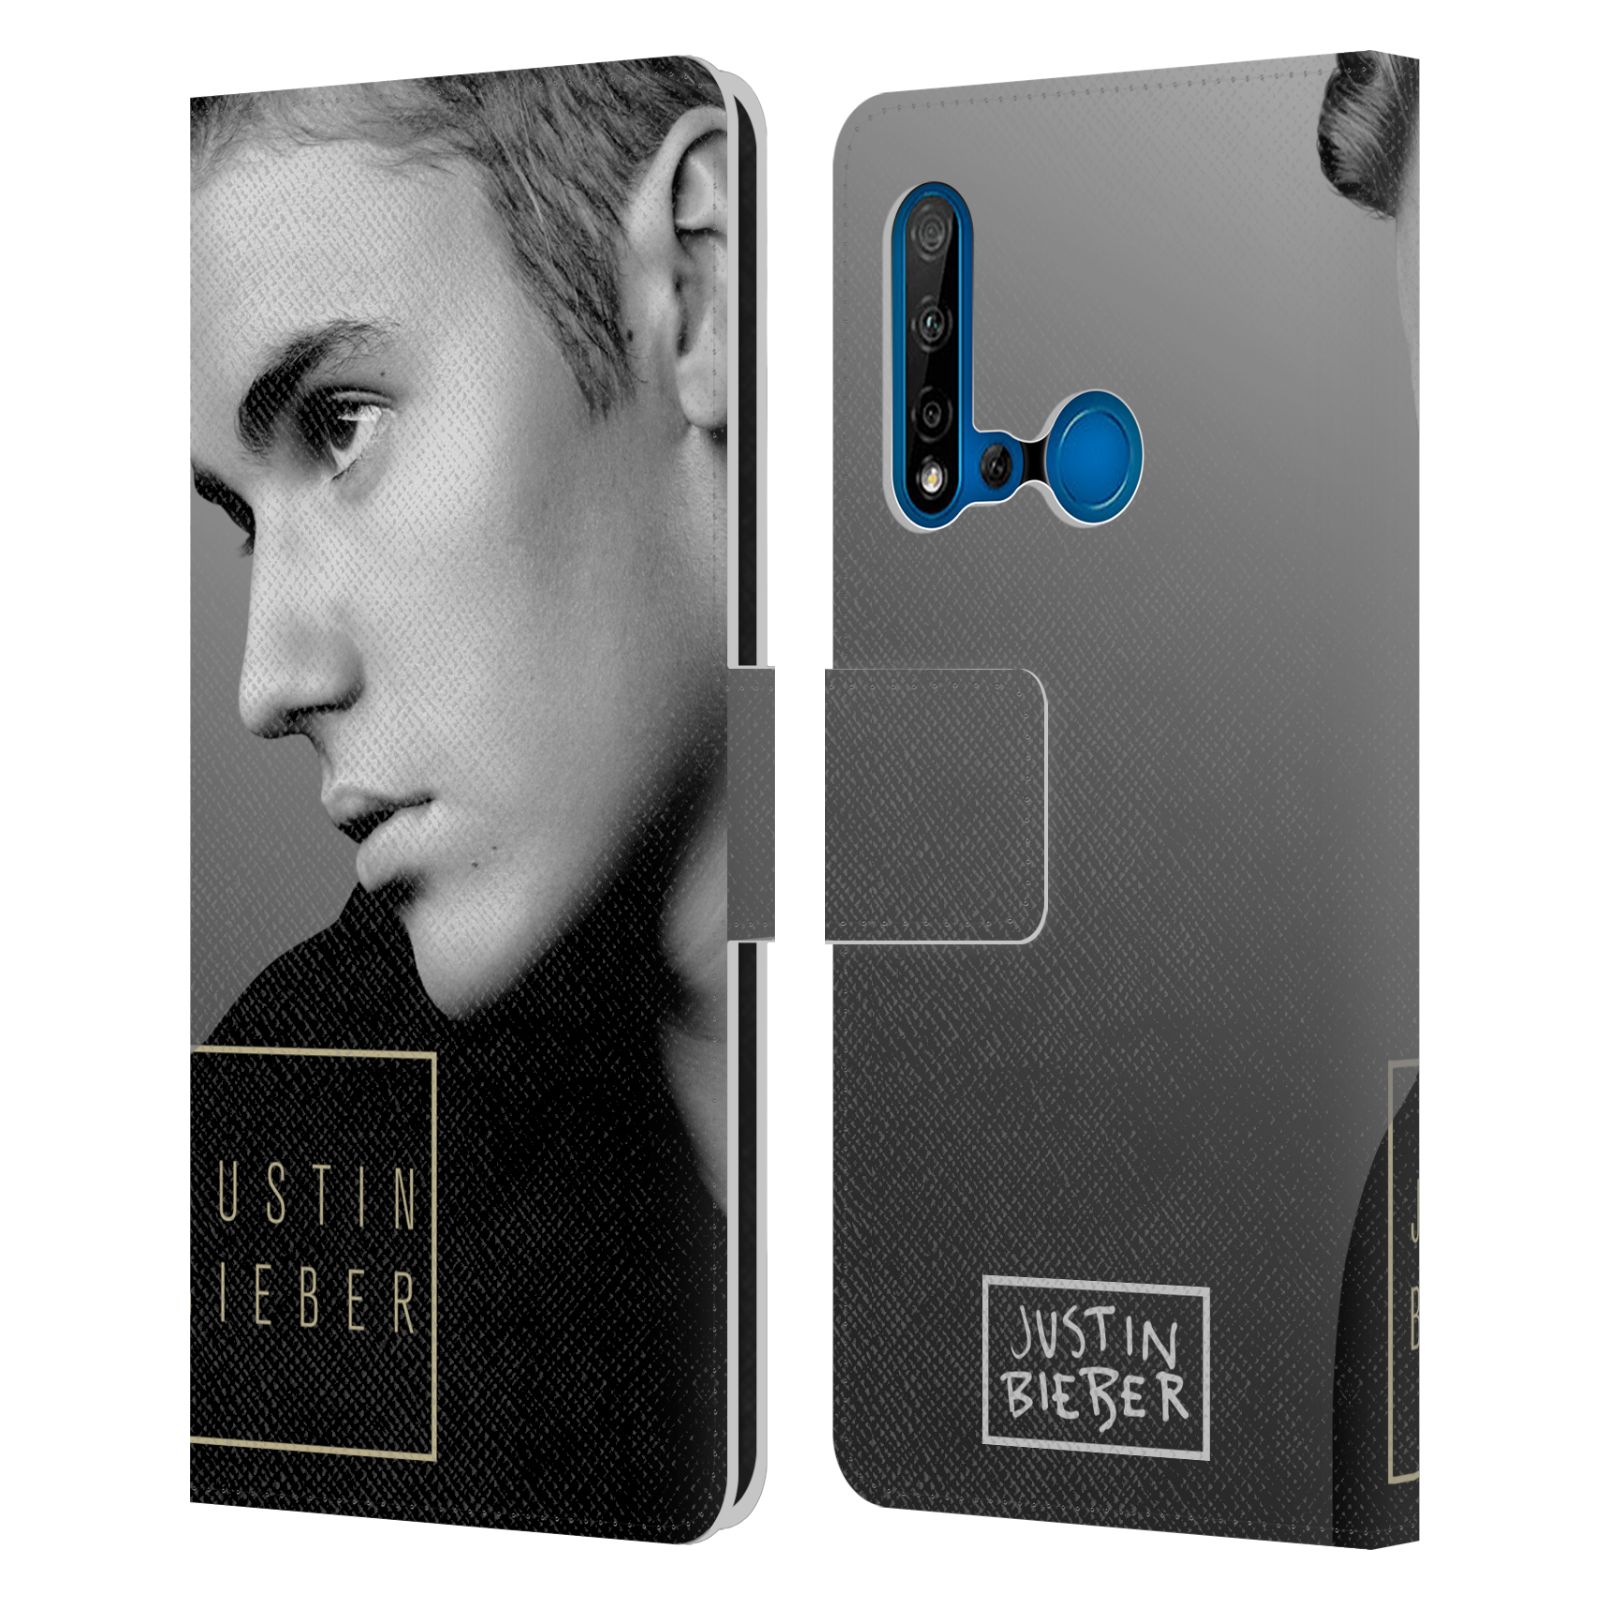 Pouzdro na mobil Huawei P20 LITE 2019 - Head Case - Justin Bieber - černobílé zrcadlo